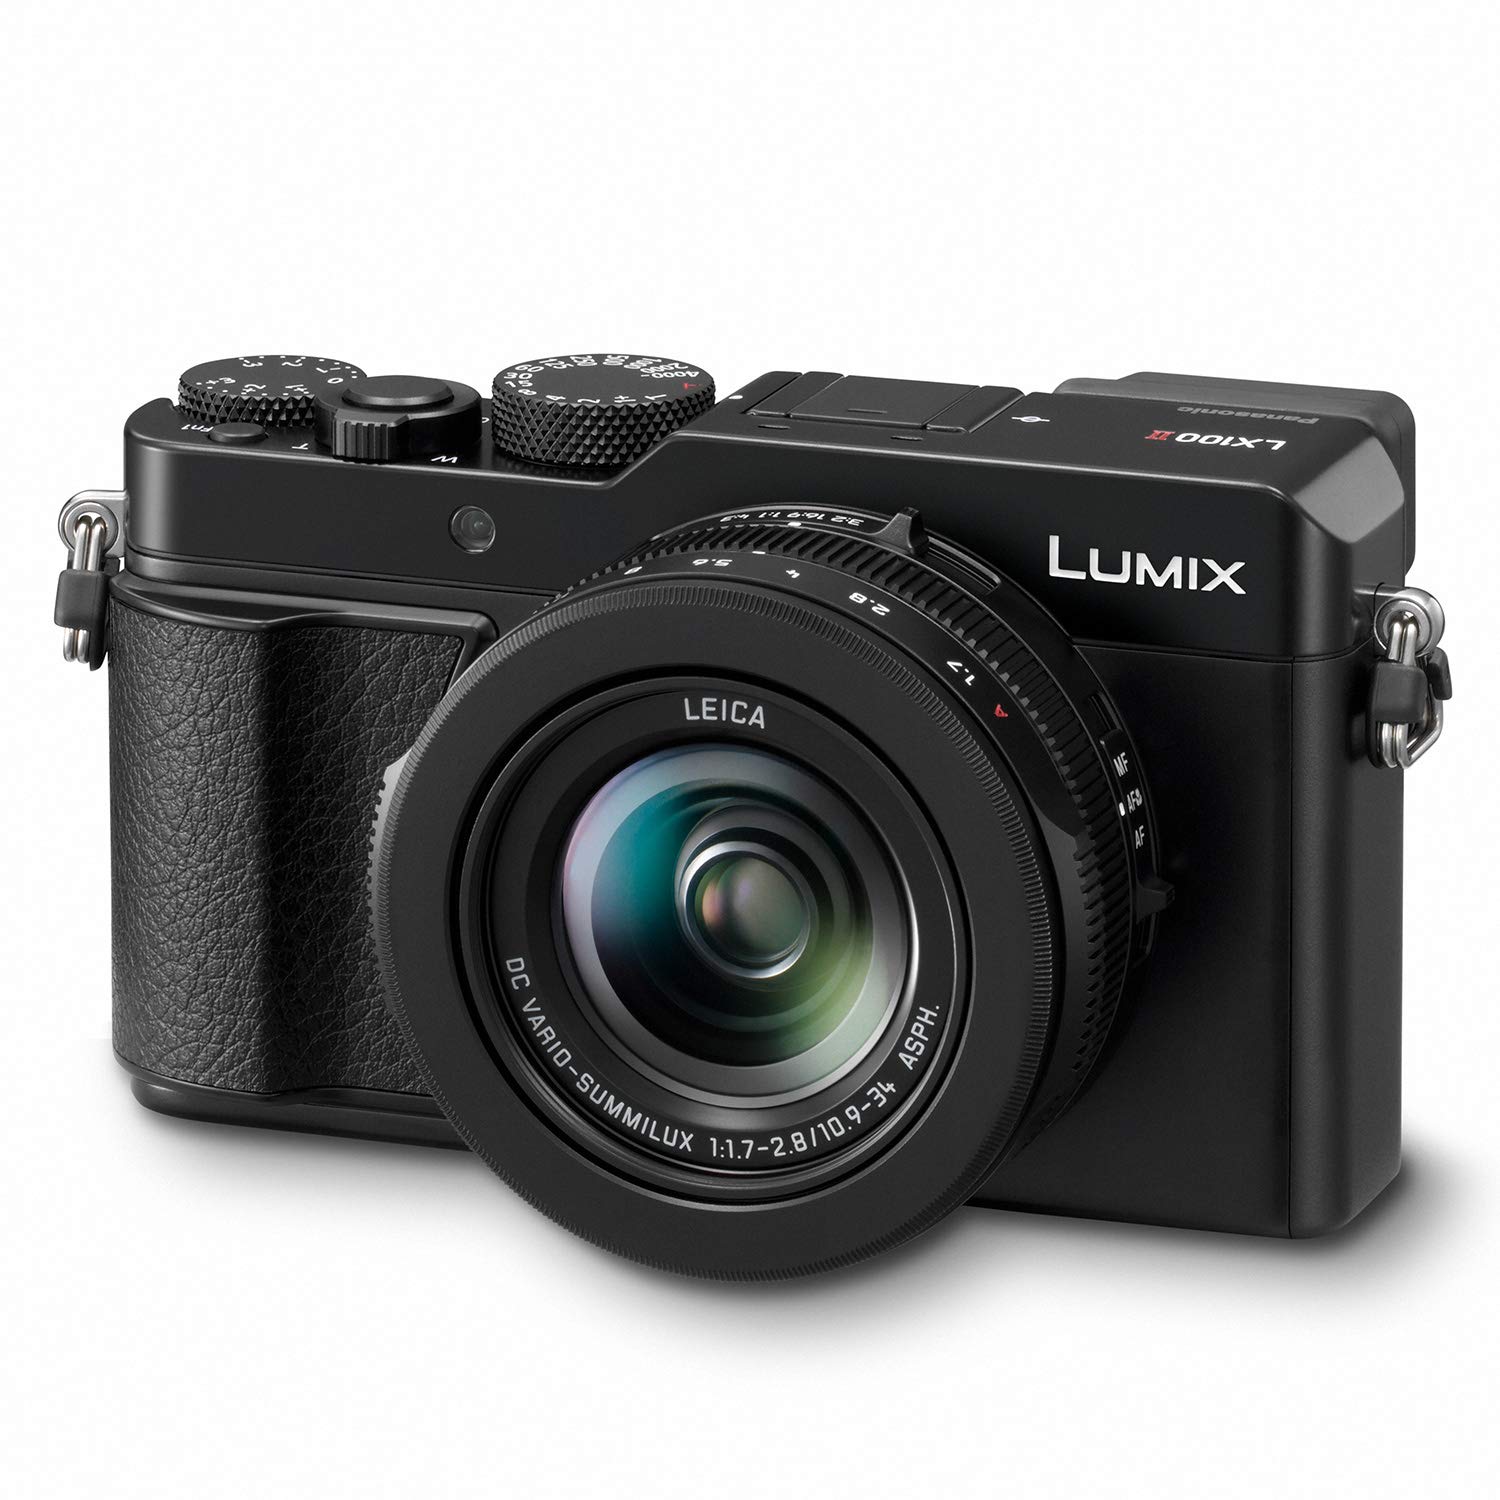  Panasonic Lumix LX100 II ラージ フォー サーズ 21.7 MP マルチ アスペクト センサー 24-75mm ライカ DC VARIO-SUMMILUX F1.7-2.8 レンズ Wi-Fi および Bluetooth カメラ、3...